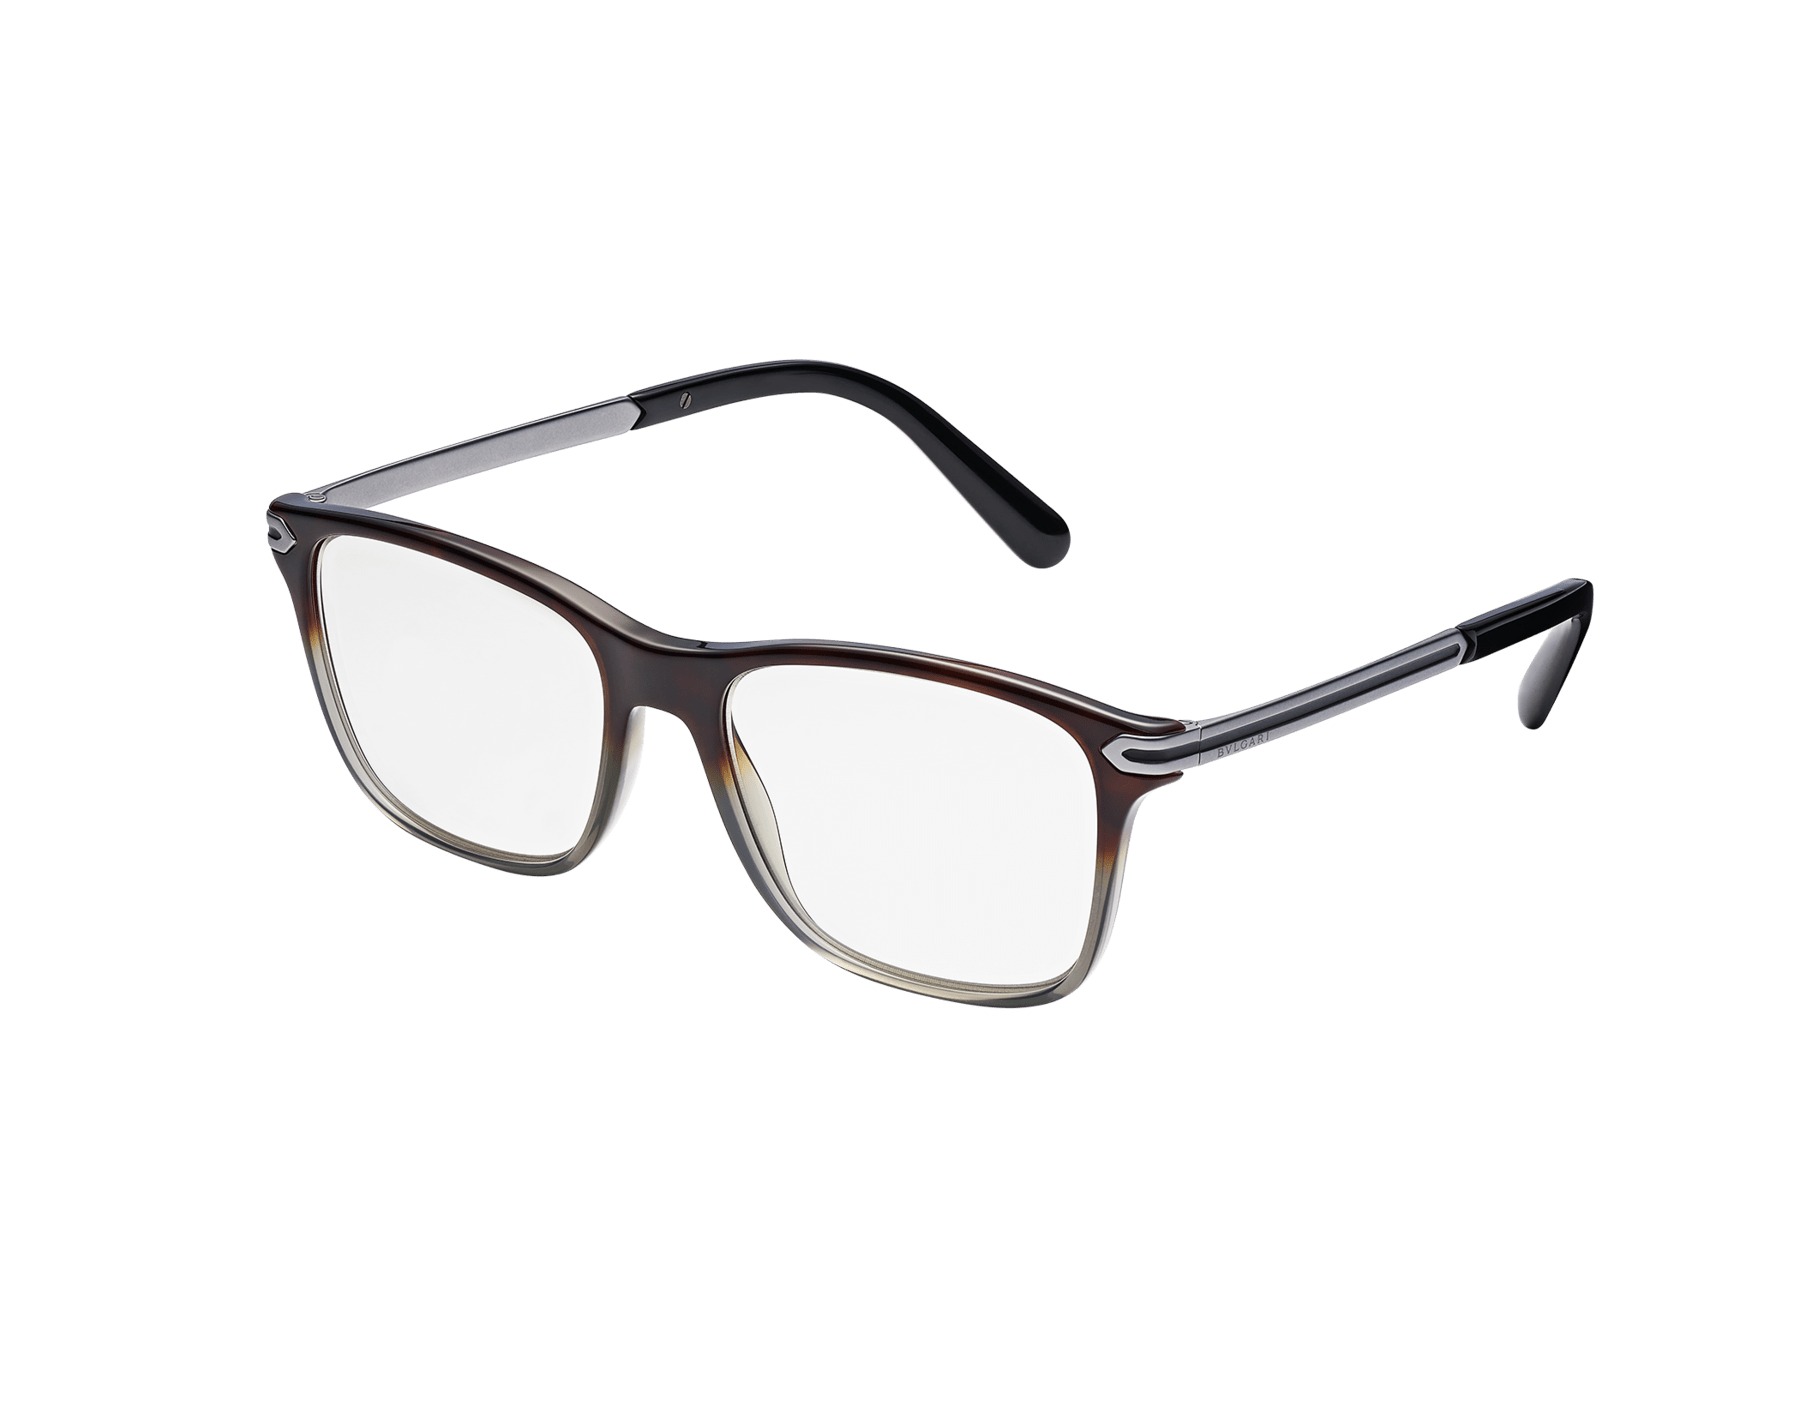 Bulgari Bulgari men’s rectangular glasses 904229 image 1